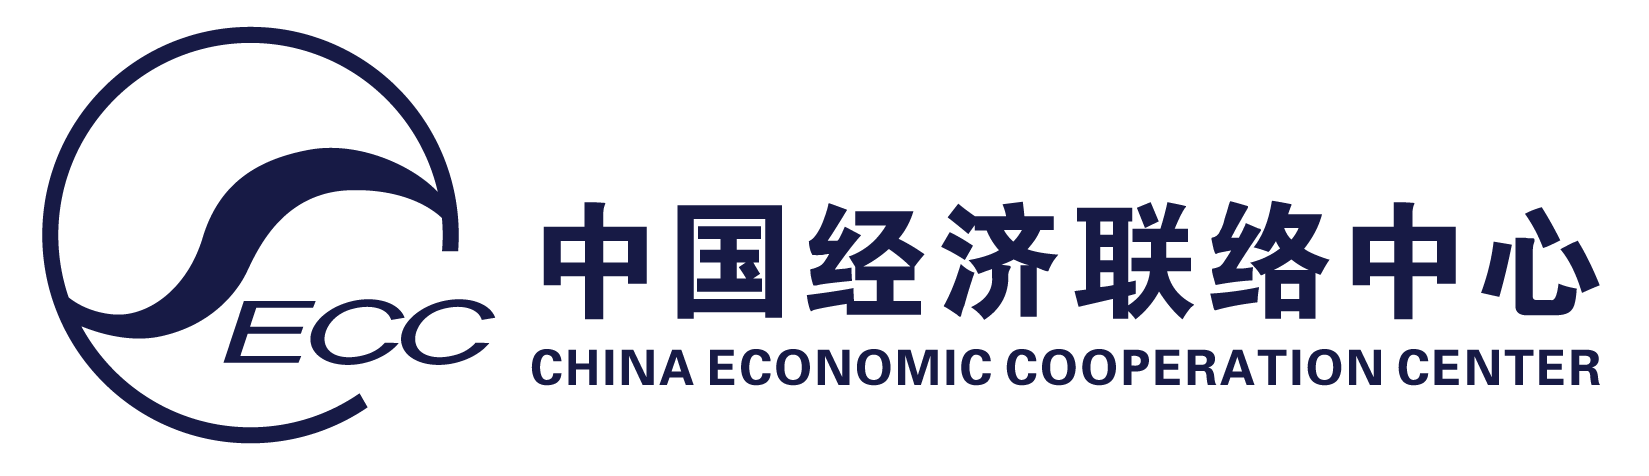 CECC – China Economic Cooperation Center